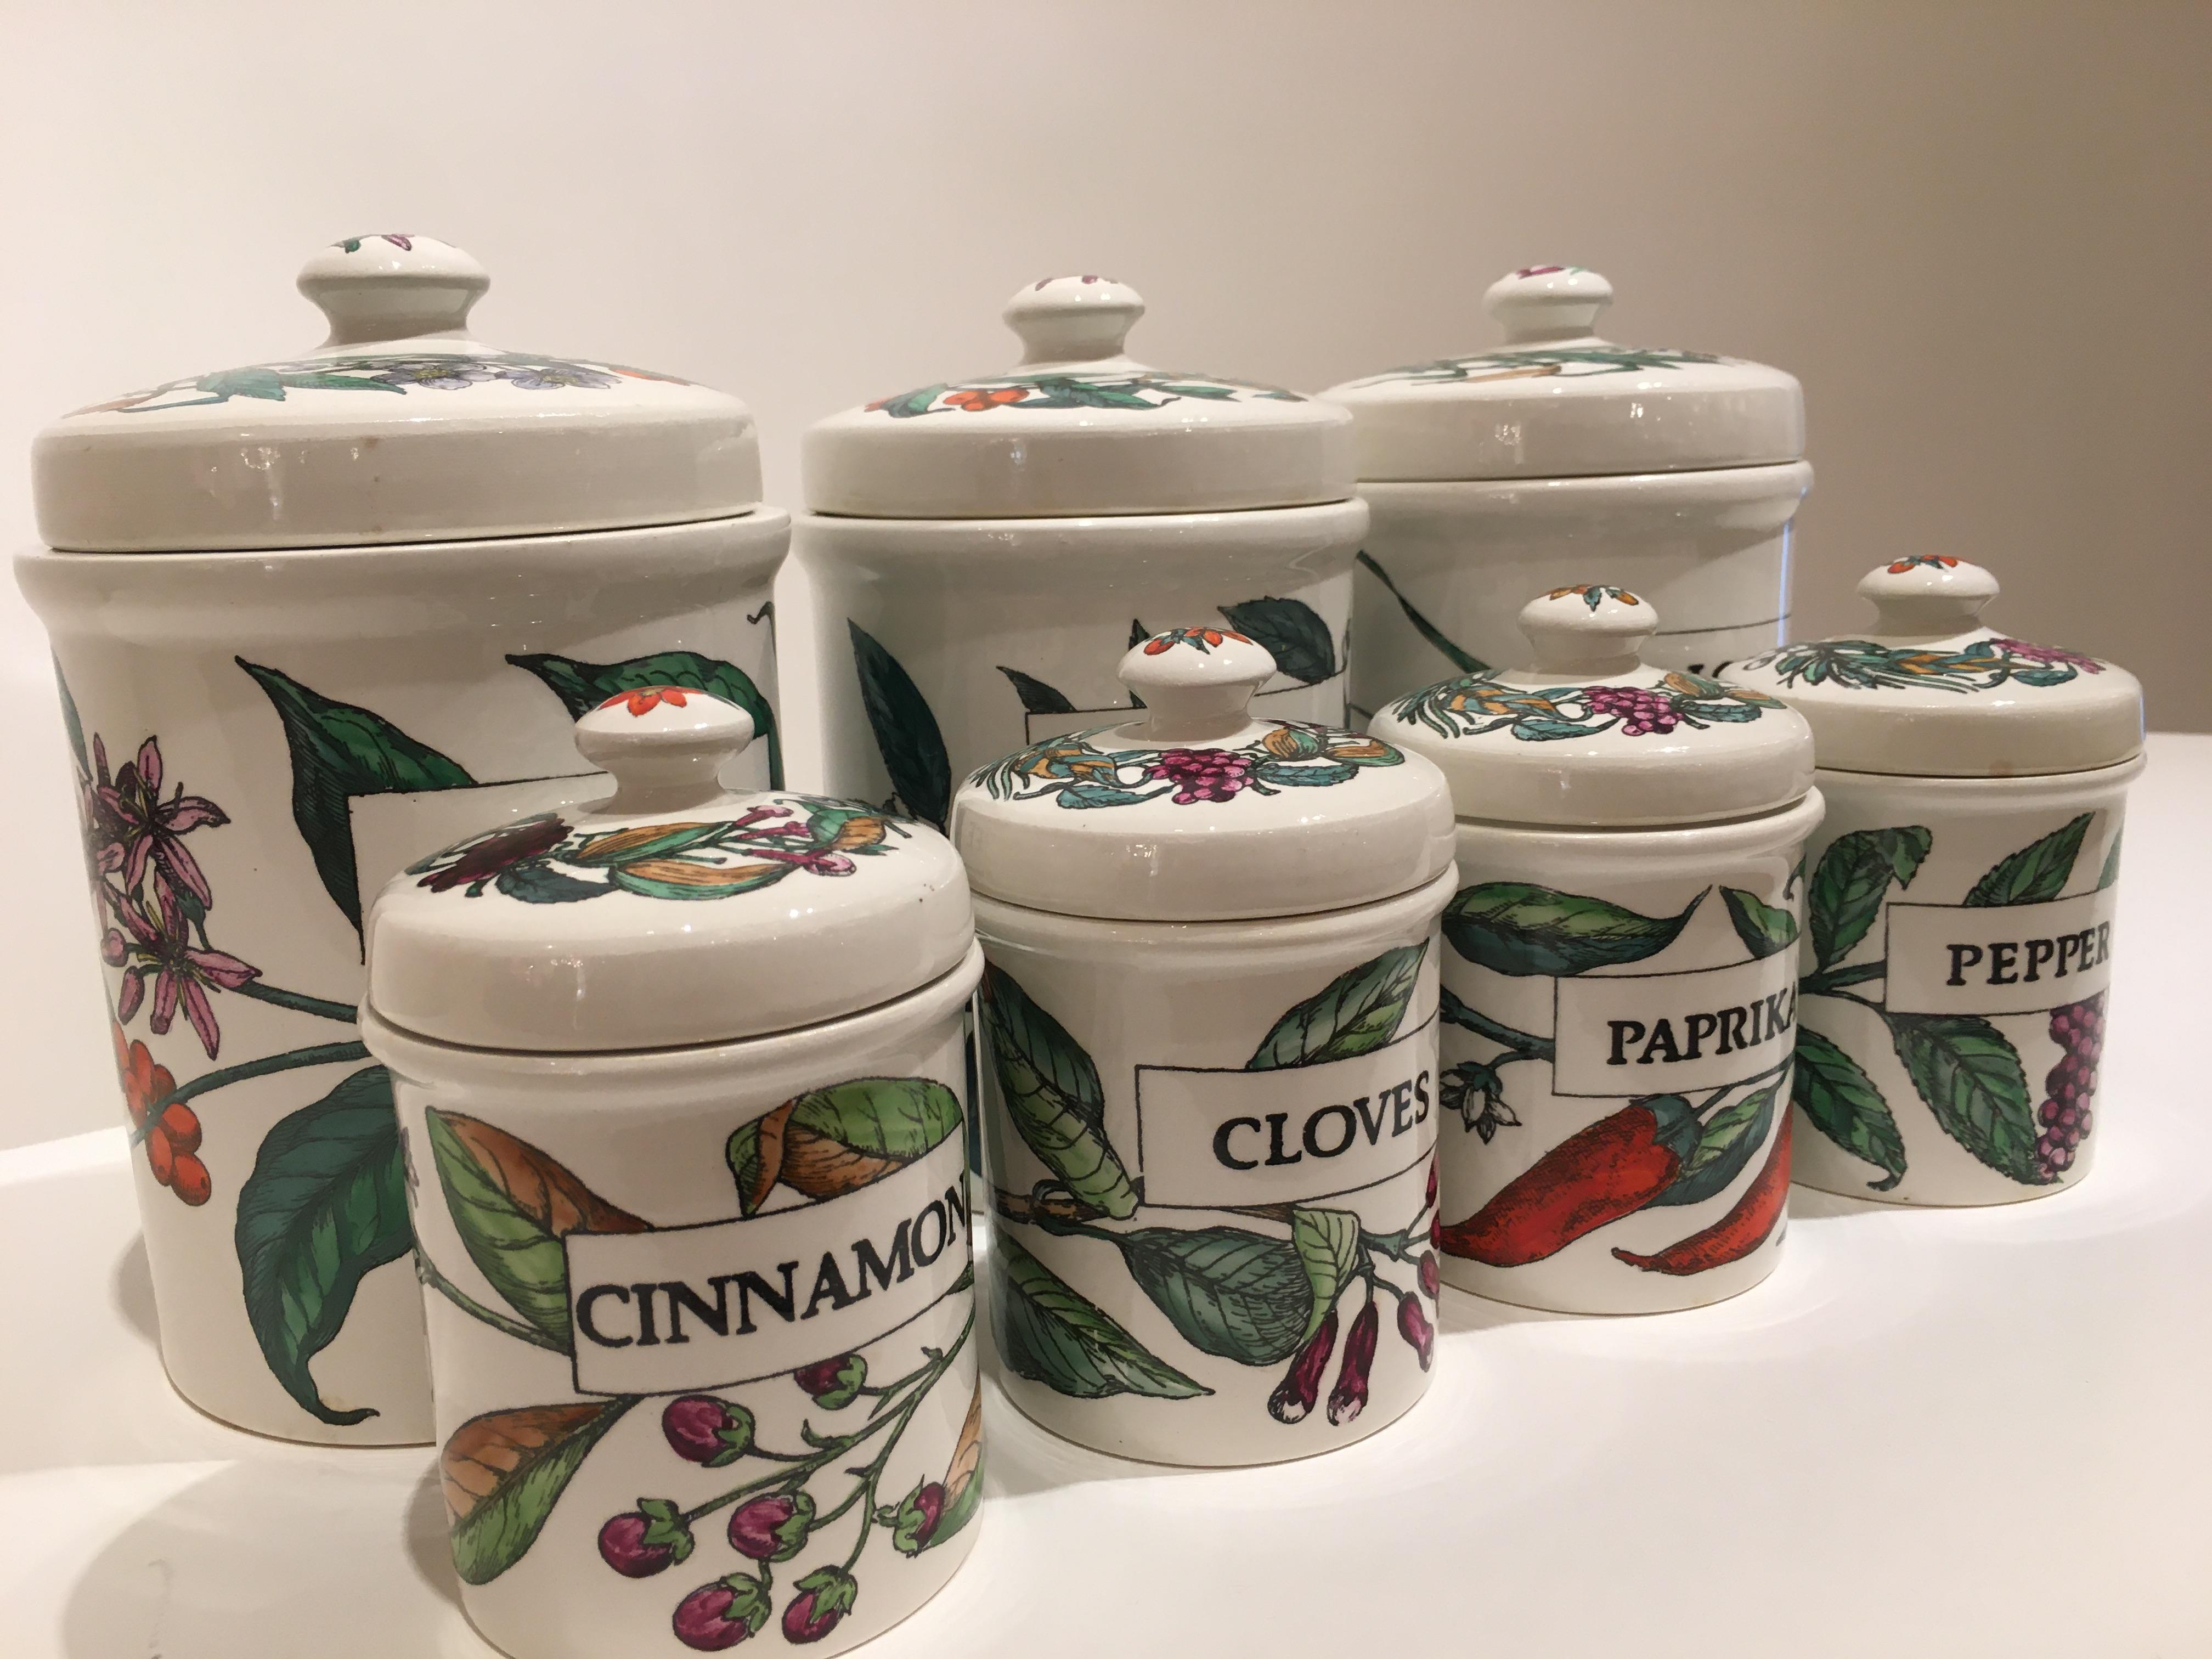 Rare ensemble de jarres de stockage en céramique décorative magnifiquement colorée par Piero Fornasetti, vers 1960. Représentant sept motifs différents... thé, café, riz, paprika, clous de girofle, cannelle et poivre, ces jarres vintage ont été